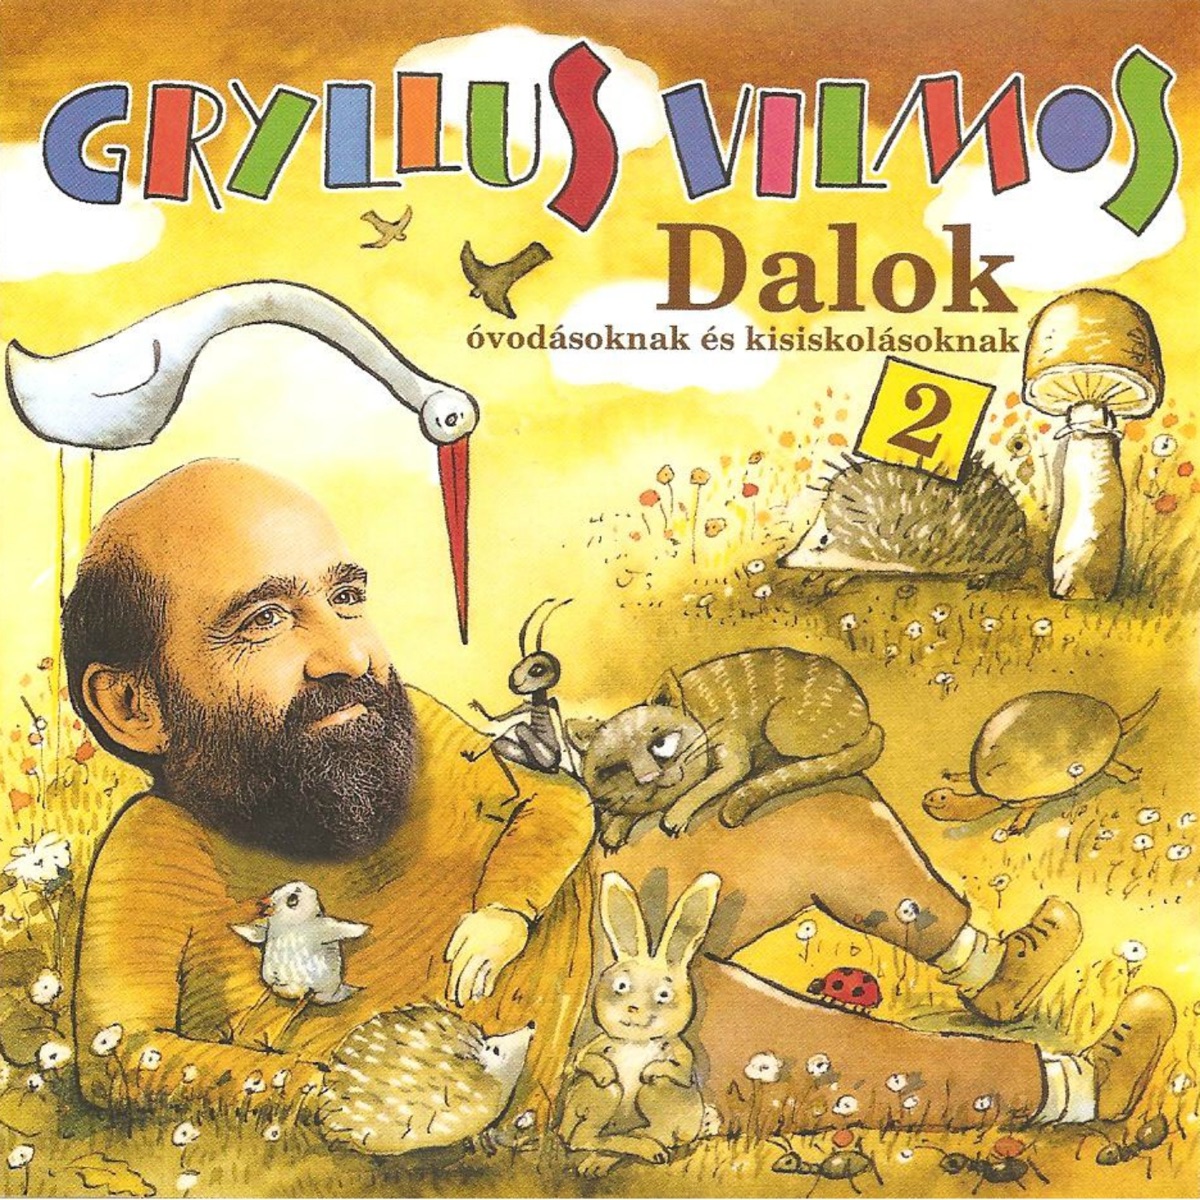 Dalok, Vol. 1 by Gryllus Vilmos on Apple Music